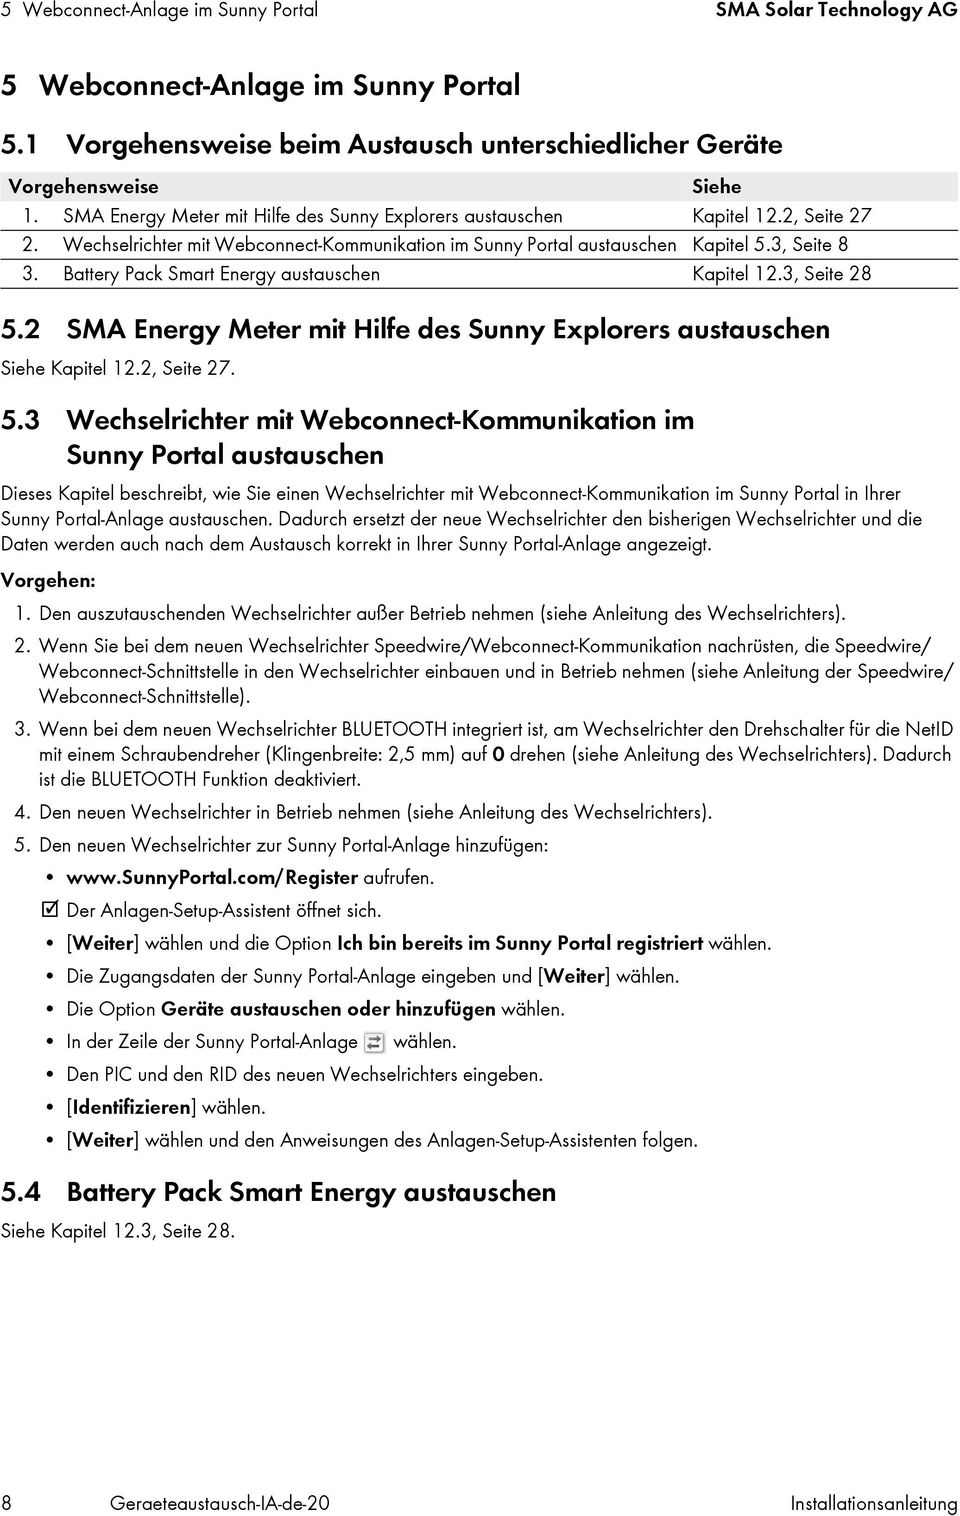 Battery Pack Smart Energy austauschen Kapitel 12.3, Seite 28 5.